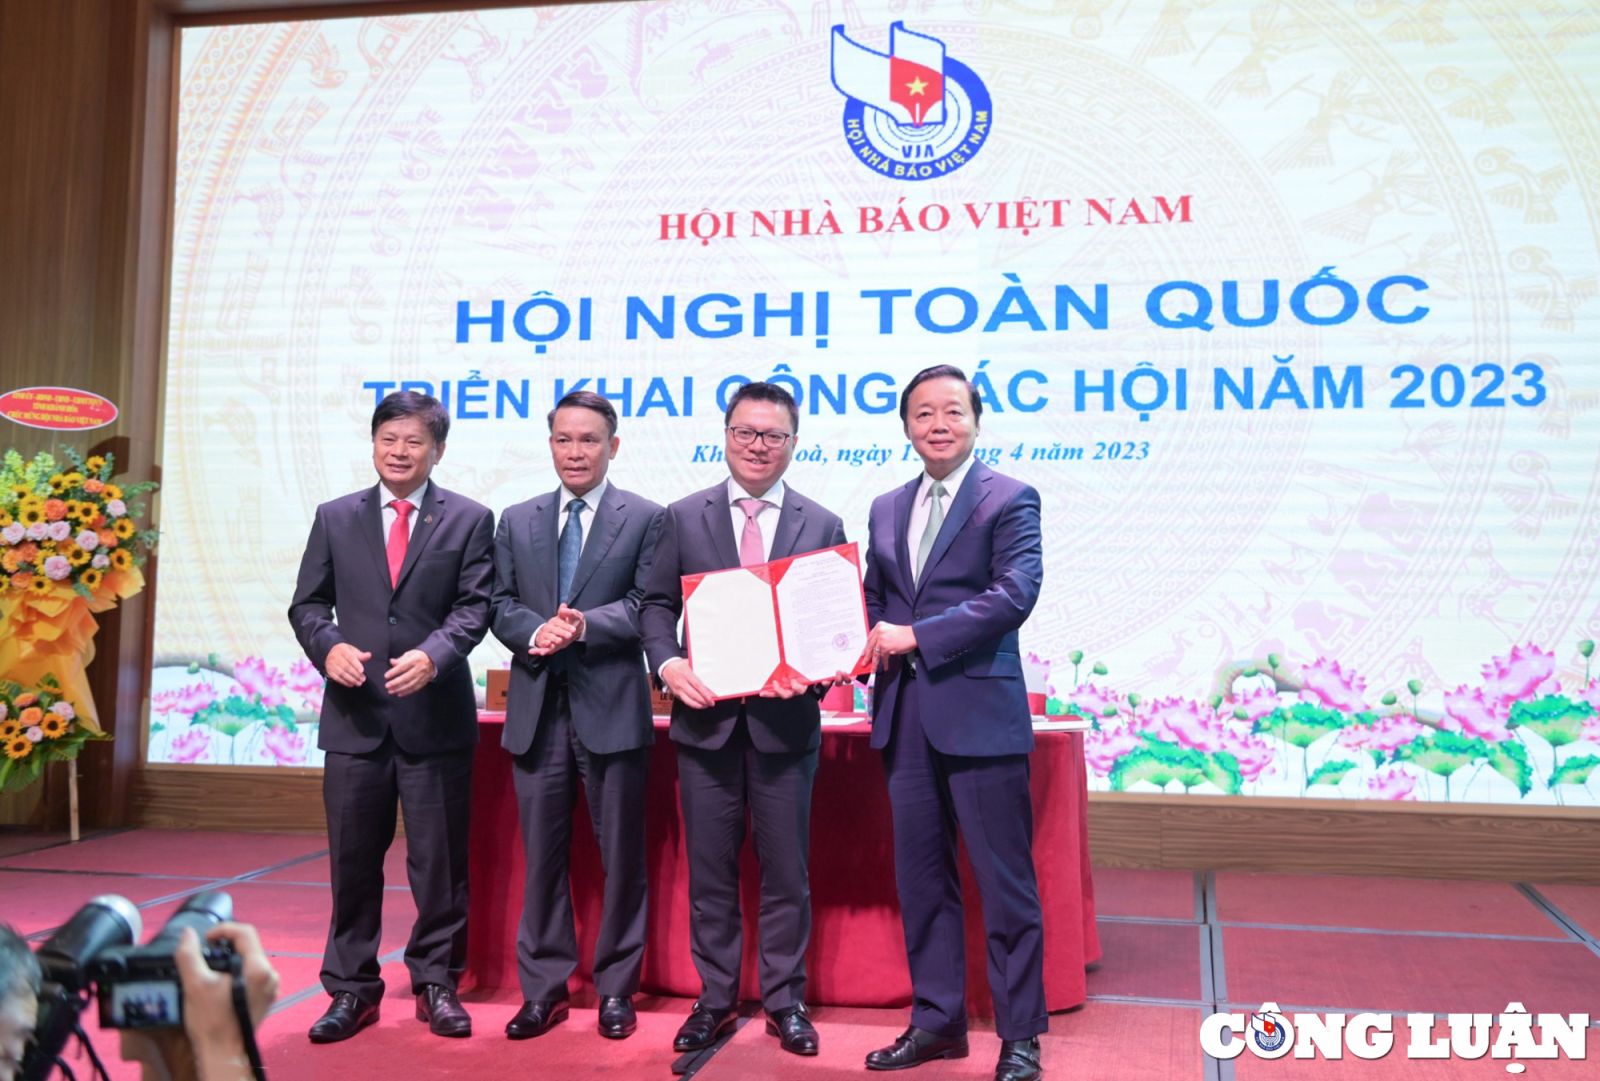 Phó Thủ tướng Chính phủ Trần Hồng Hà trao Quyết định phê duyệt Điều lệ Hội Nhà báo Việt Nam vừa được ký ngày 12/4/2023 cho các đồng chí lãnh đạo Hội tại Hội nghị.